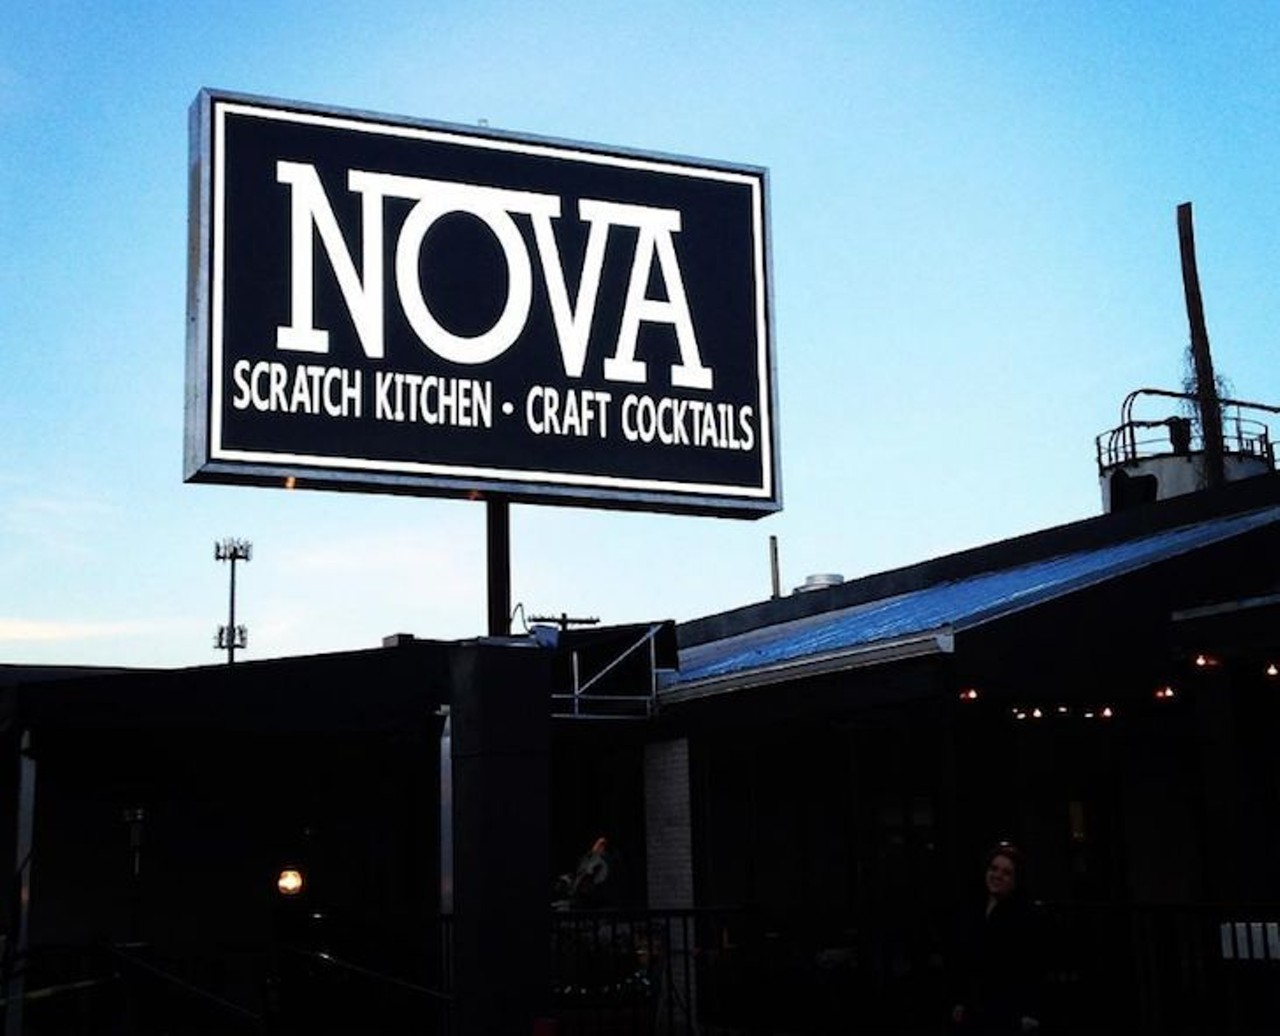 Nova Restaurant
1409 N. Orange Ave.
Photo by Faiyaz Kara